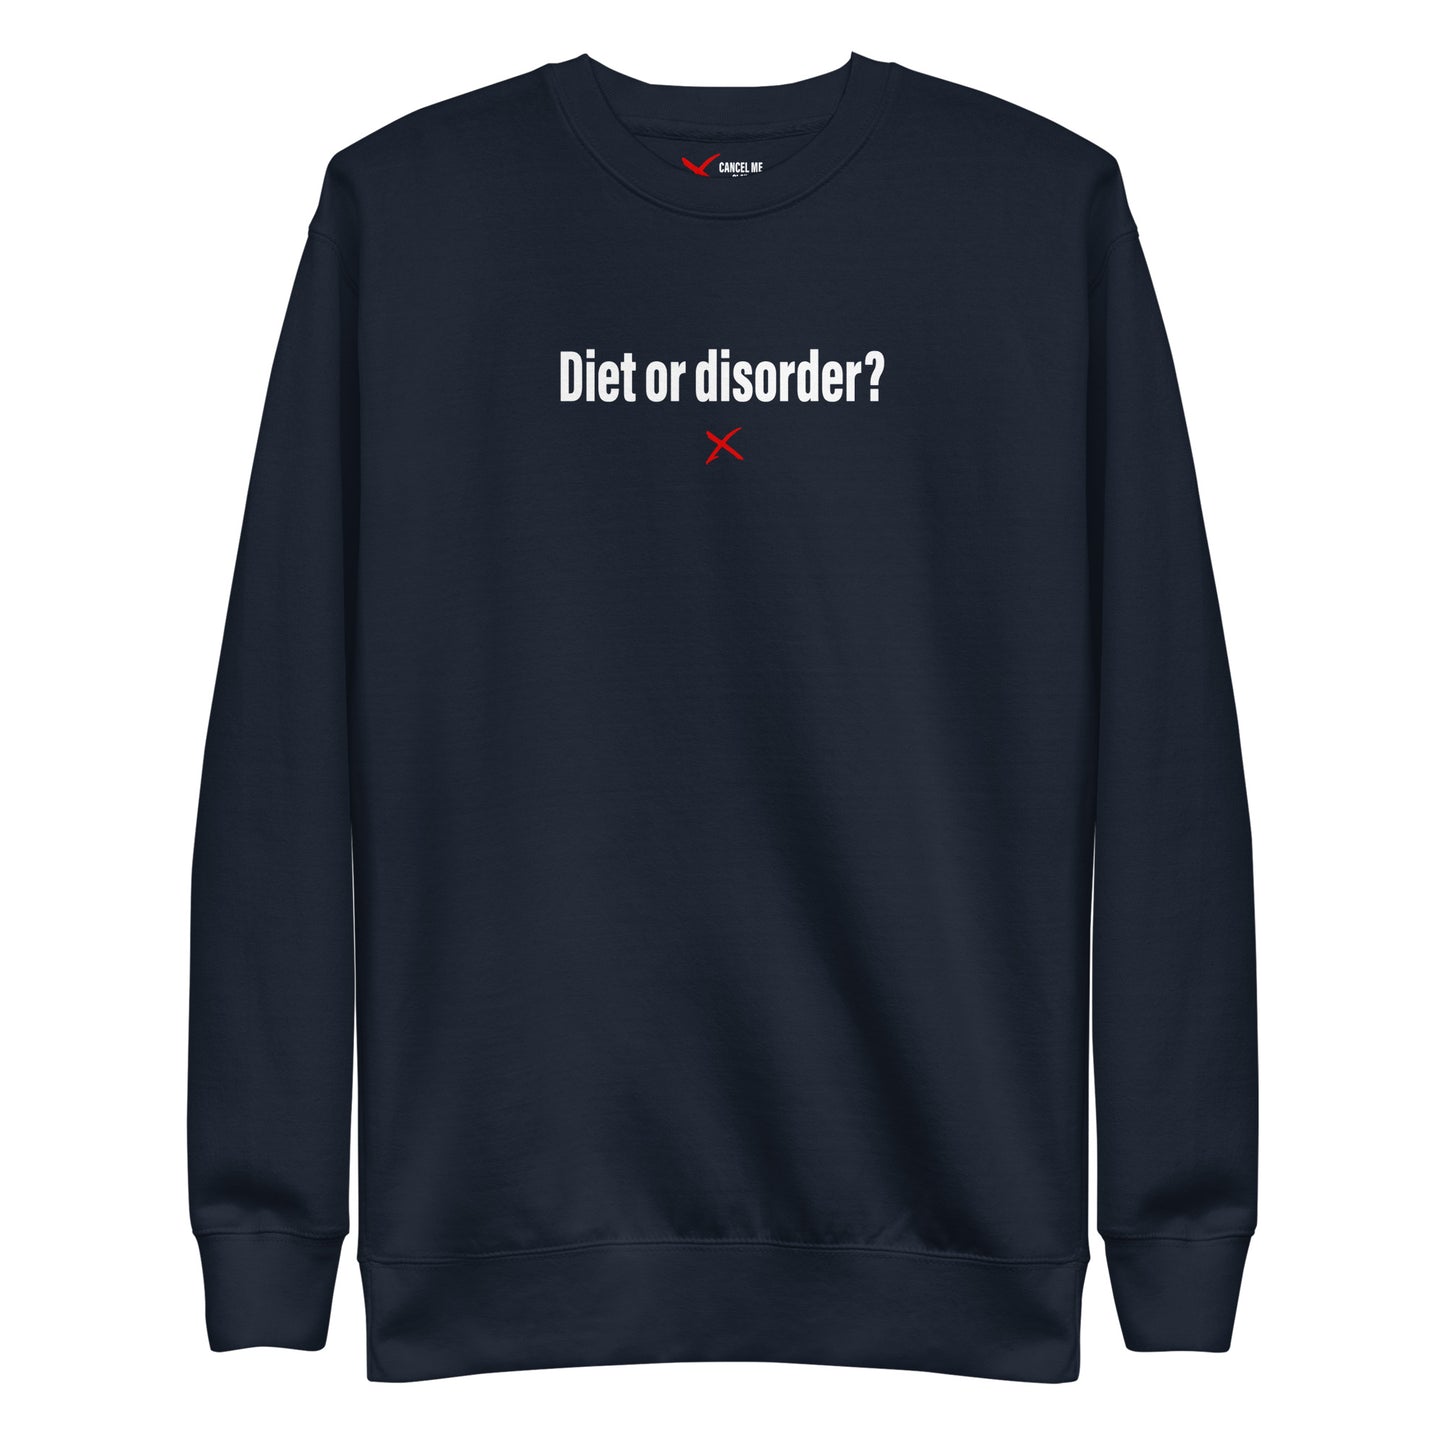 Diet or disorder? - Sweatshirt